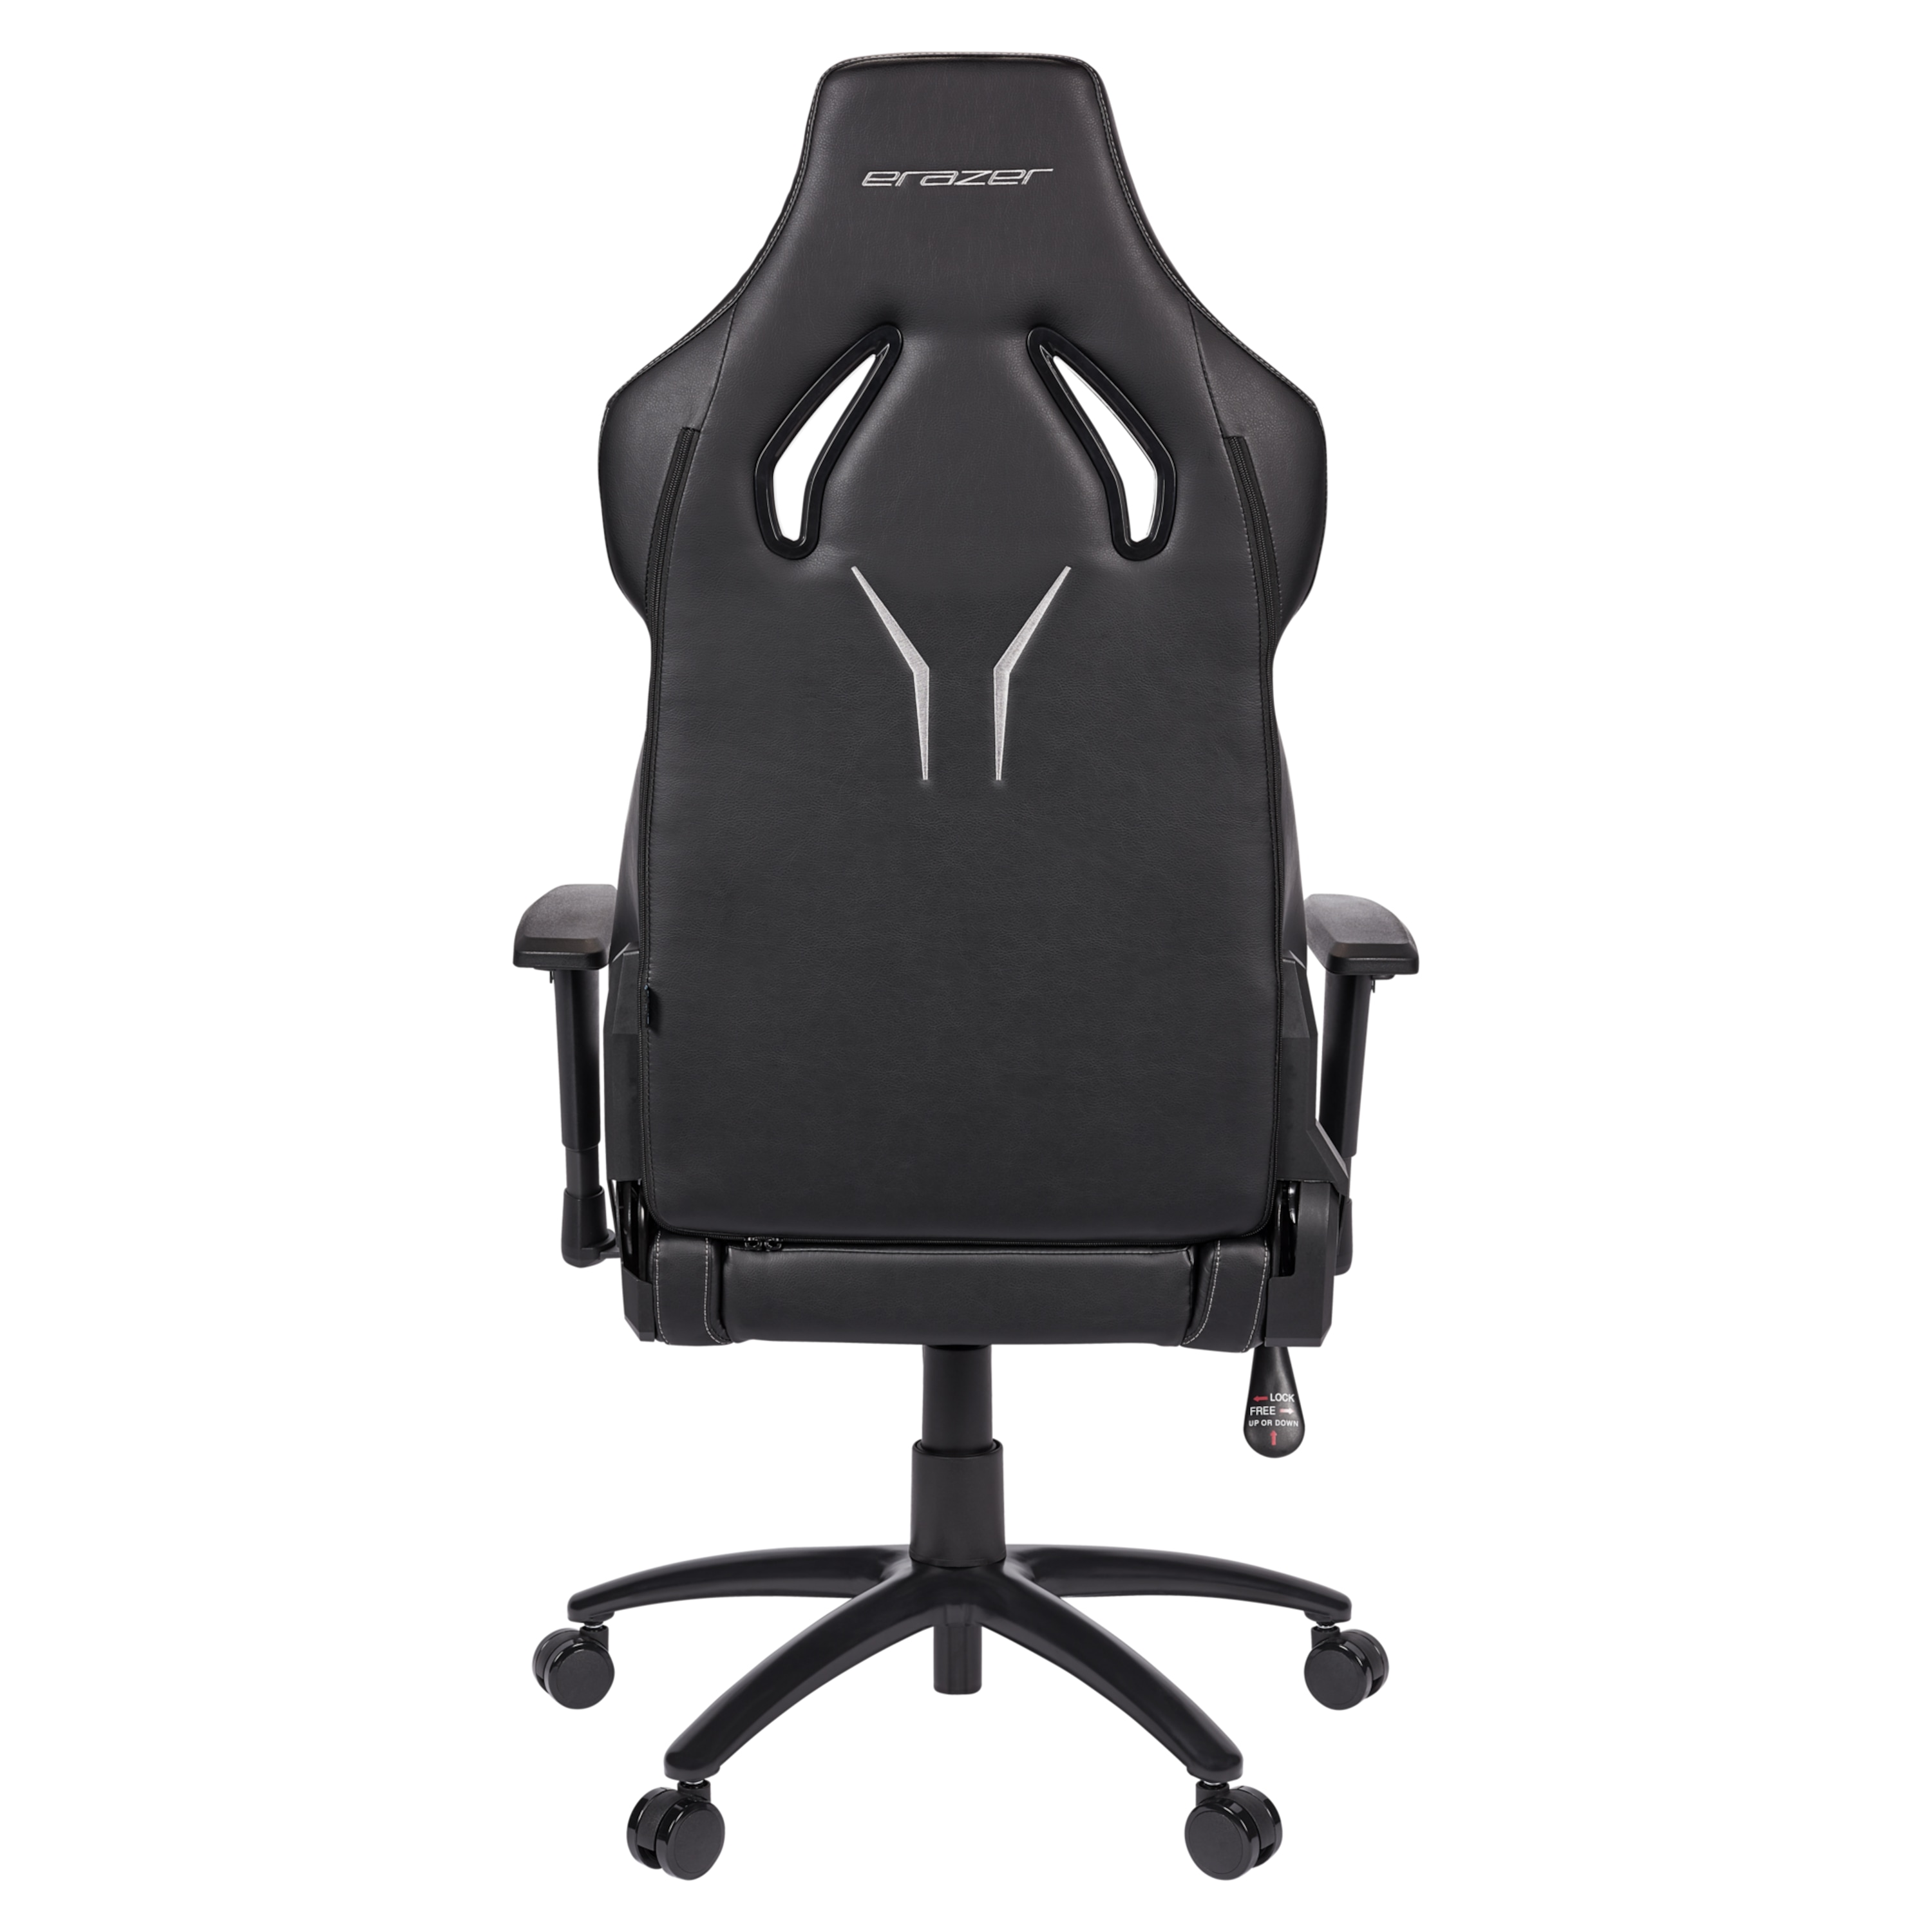 MEDION® ERAZER® Druid P10, Gaming Stuhl mit hohem Sitzkomfort, sportlichen Look, hochwertige Materialien & ergonomisch unterstütze Sitzposition